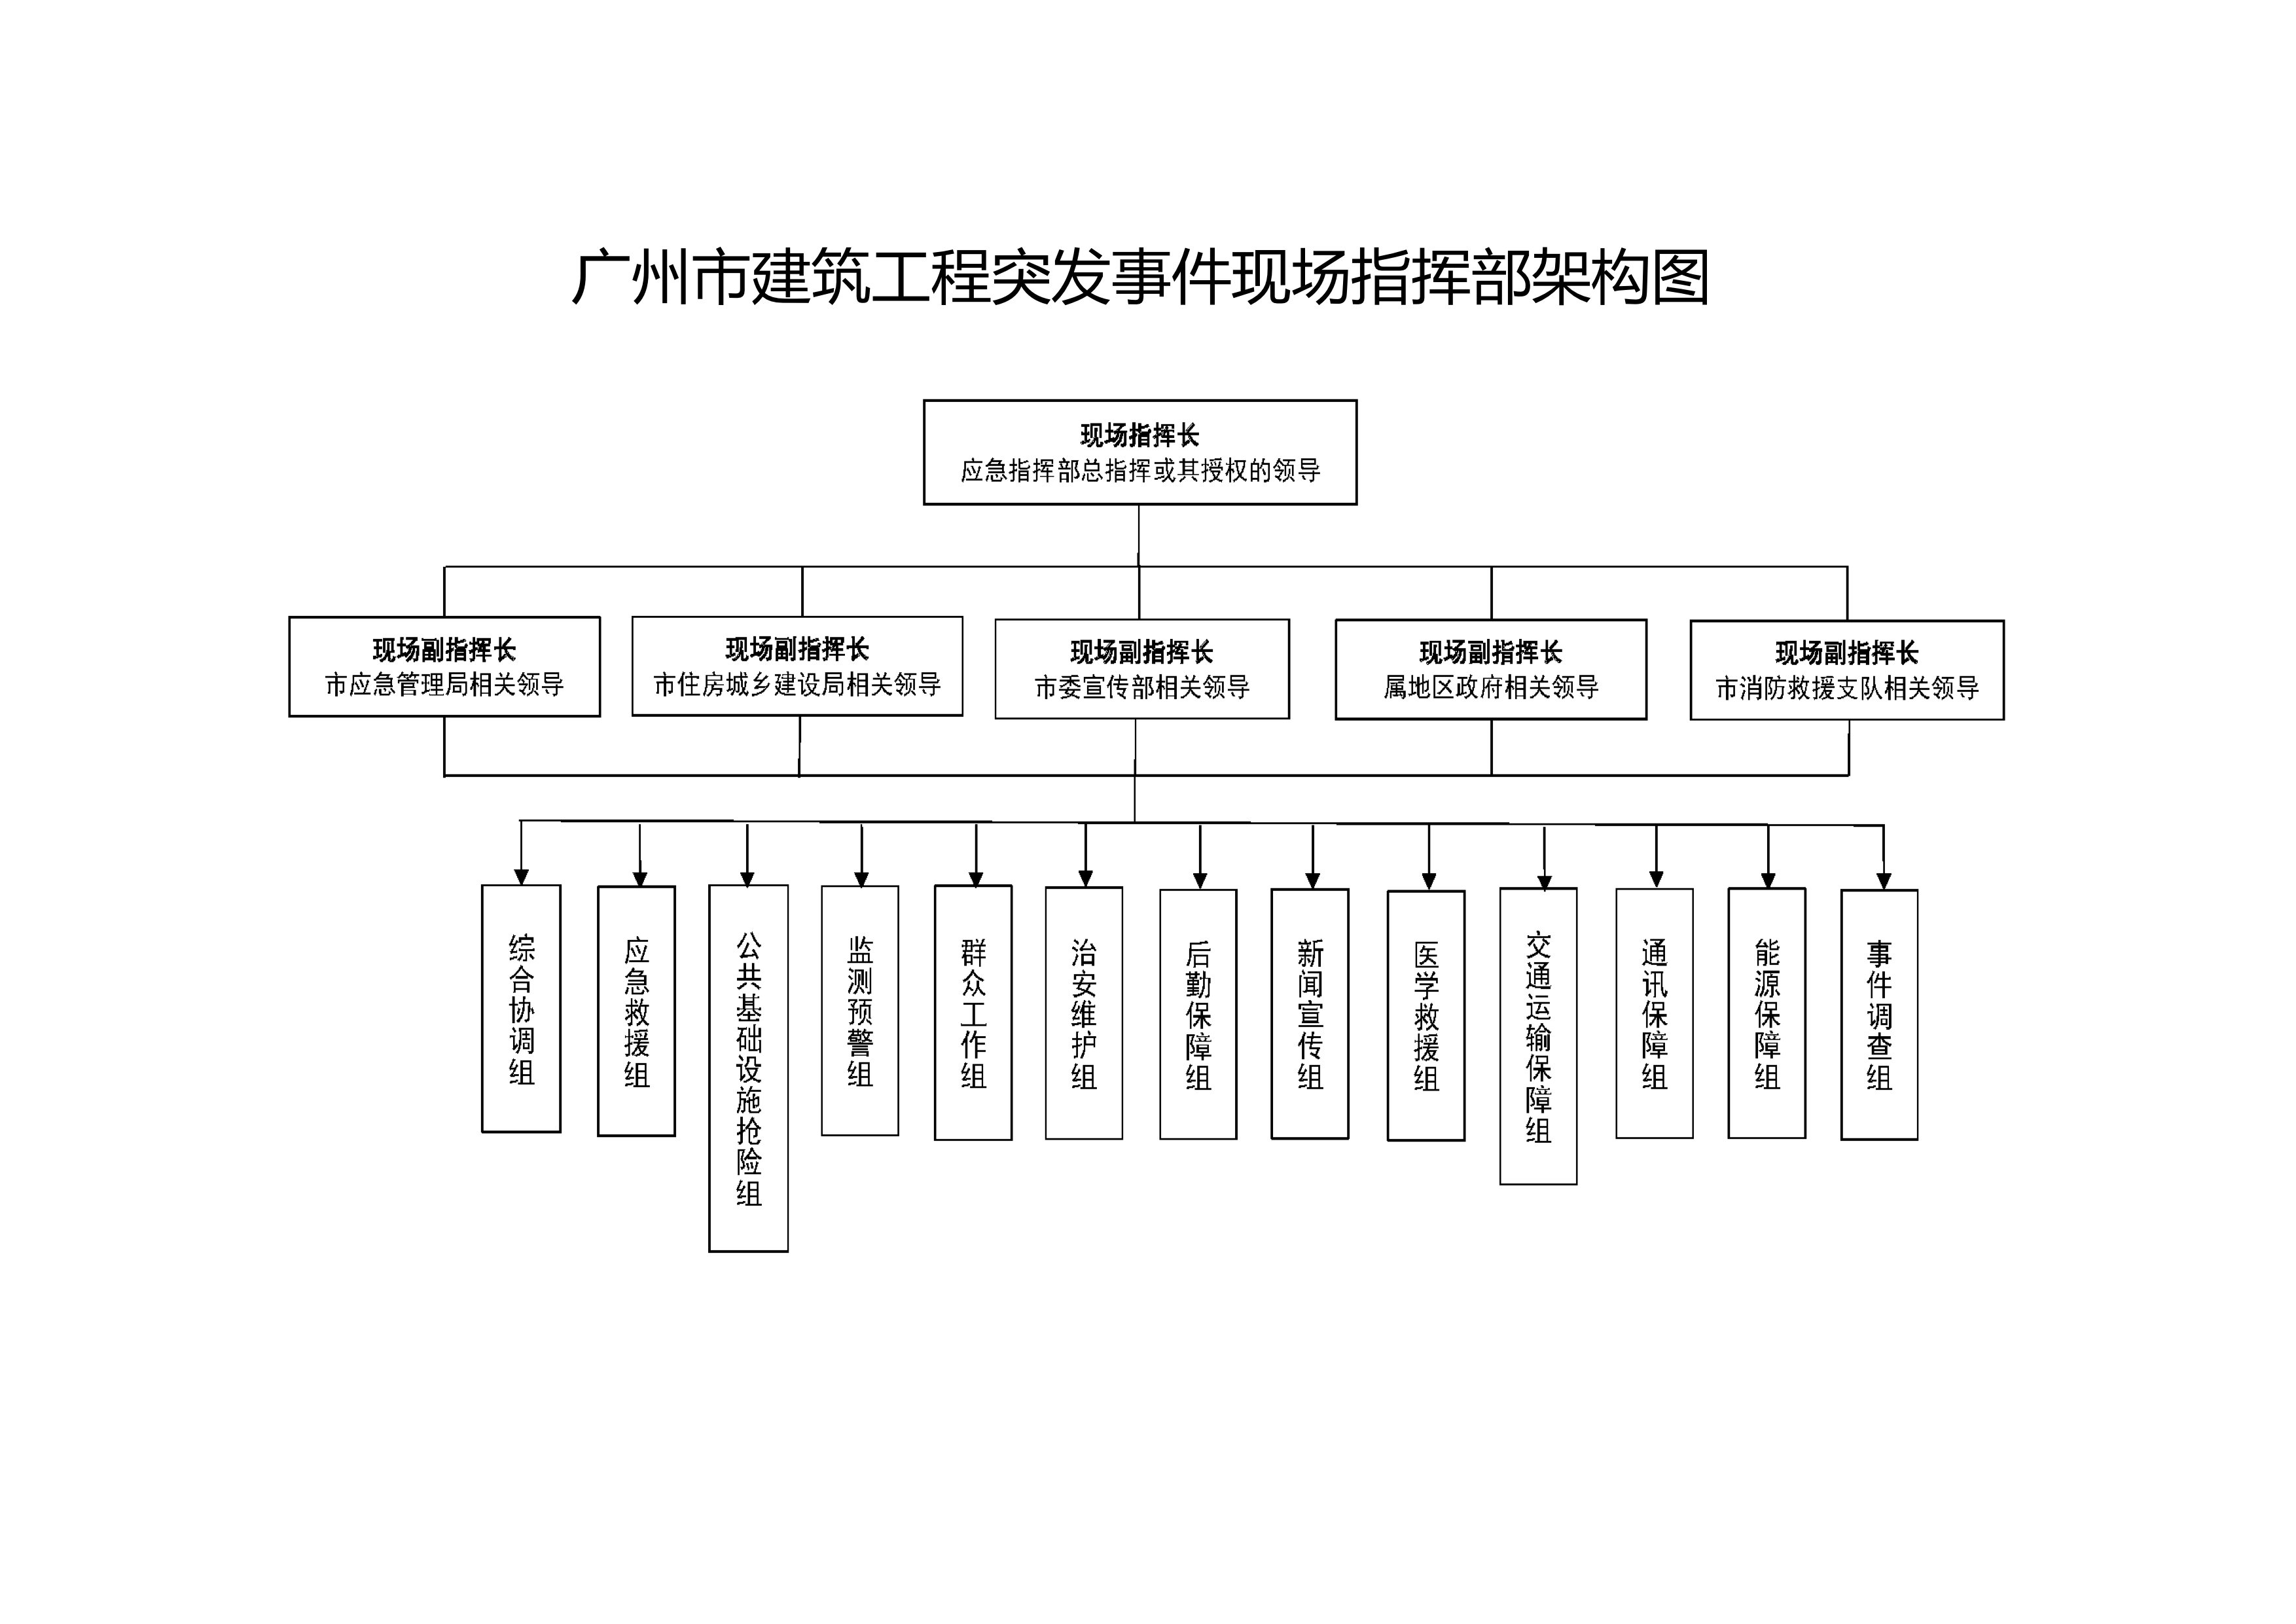 附件2广州市建筑工程突发事件现场指挥部架构图.png